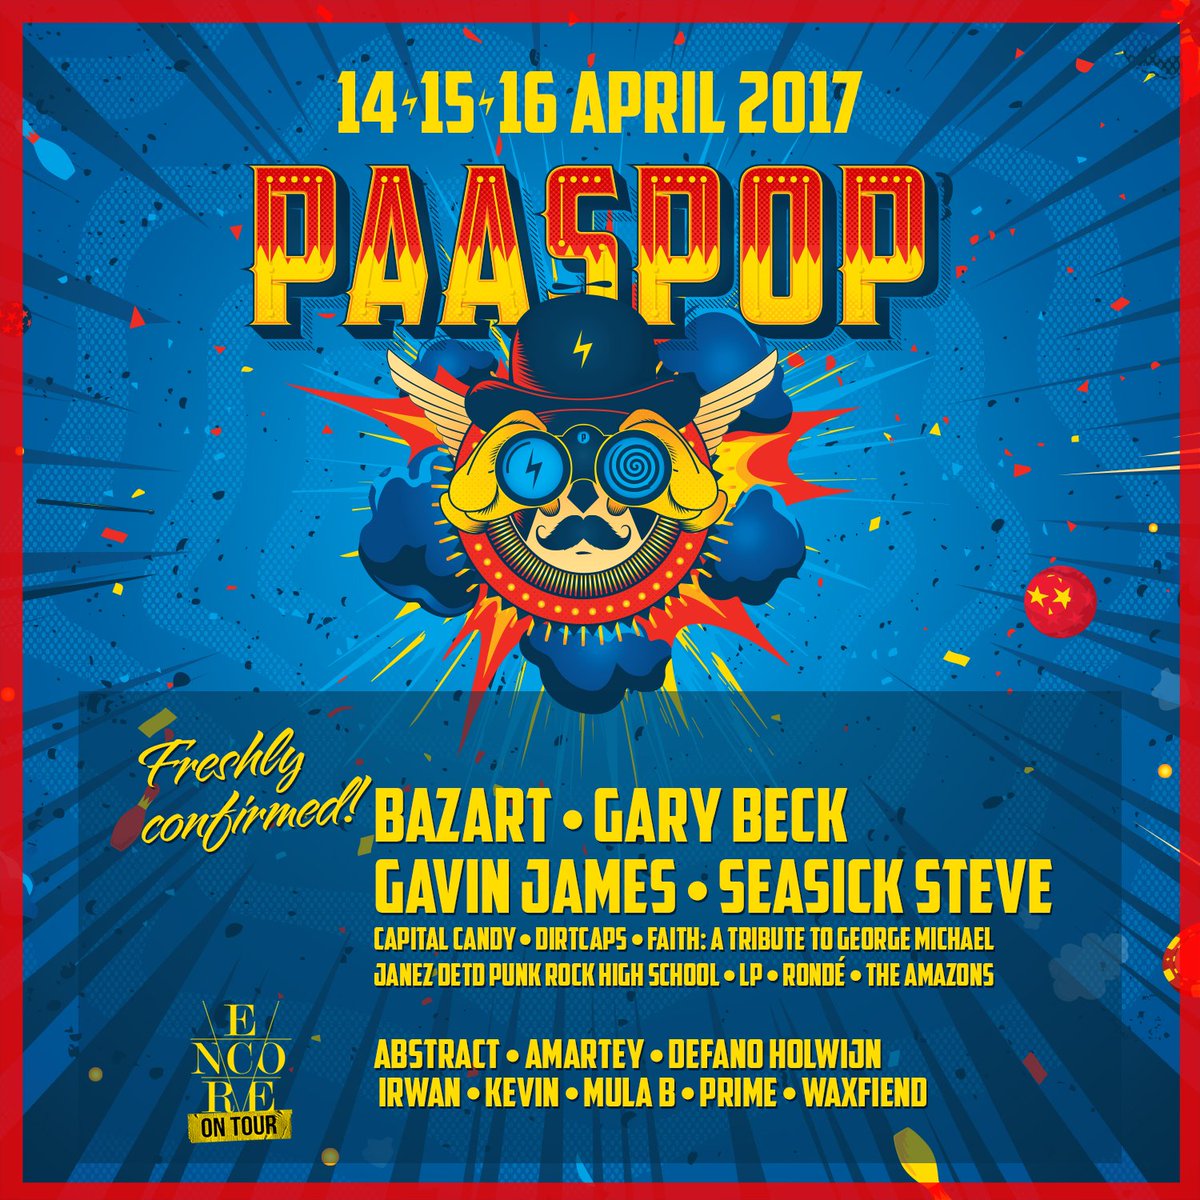 Nieuwe bevestigingen voor Paaspop 2017! Oa Bazart, Gary Back, Gavin James, Seasick Steve & @EncoreAmsterdam